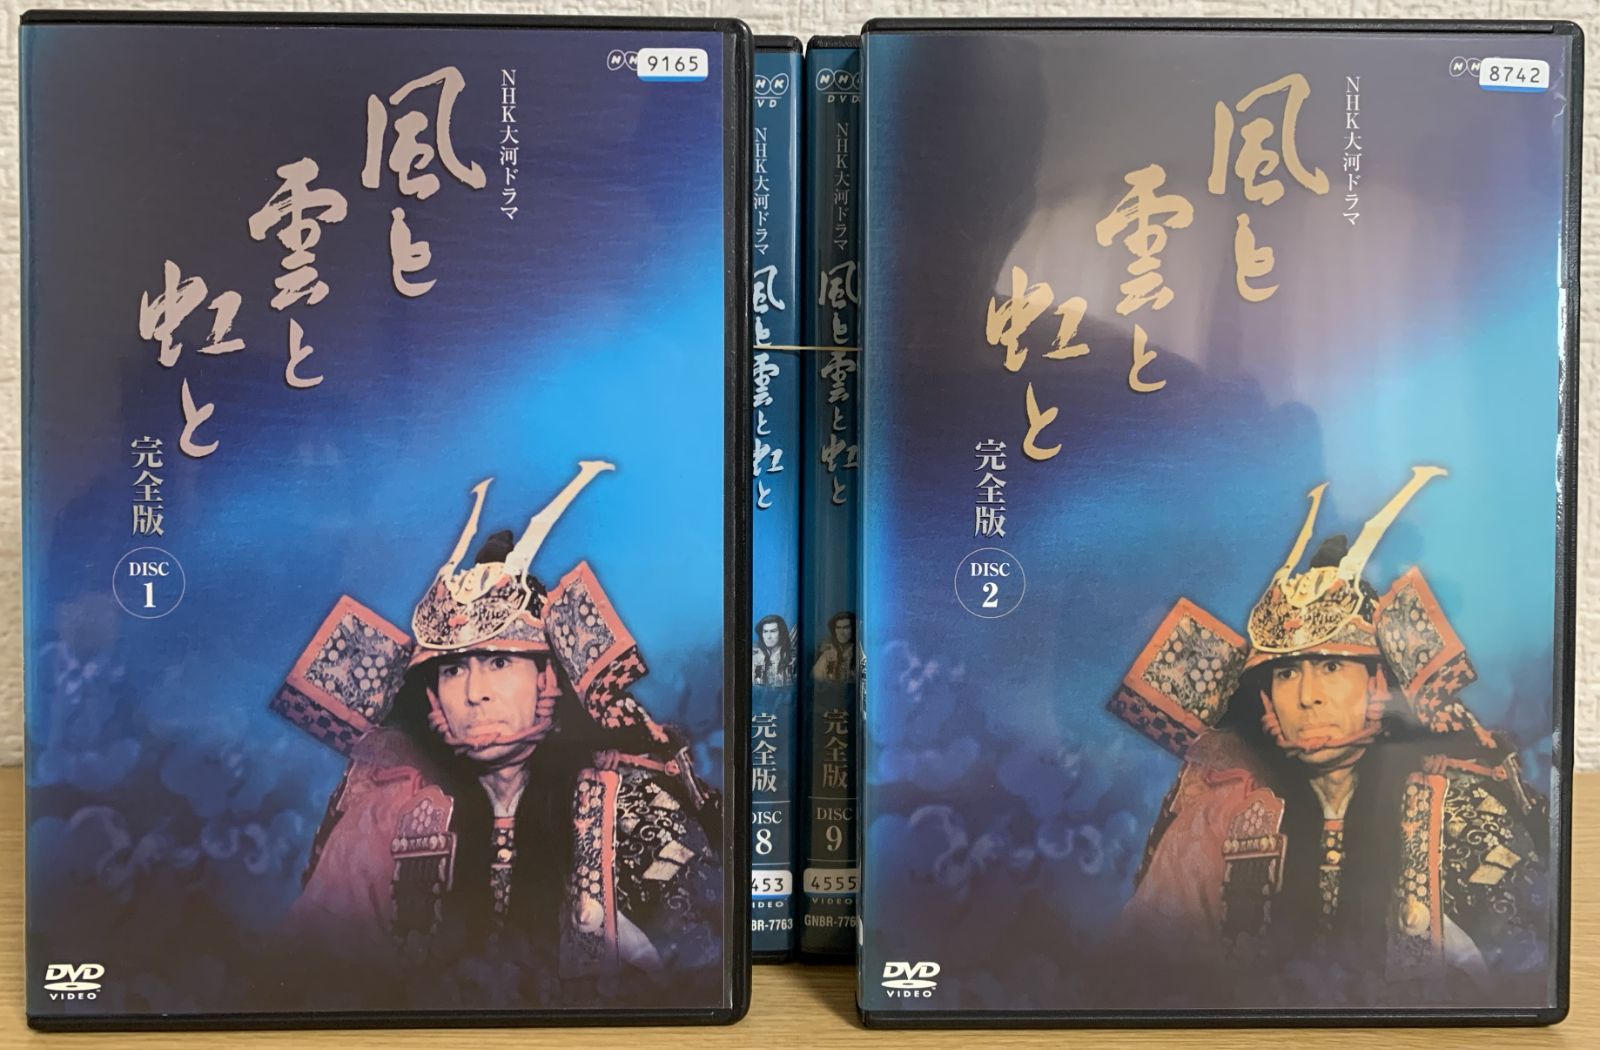 NHK大河ドラマ 春日局 dvd全巻購入希望致します25000円で